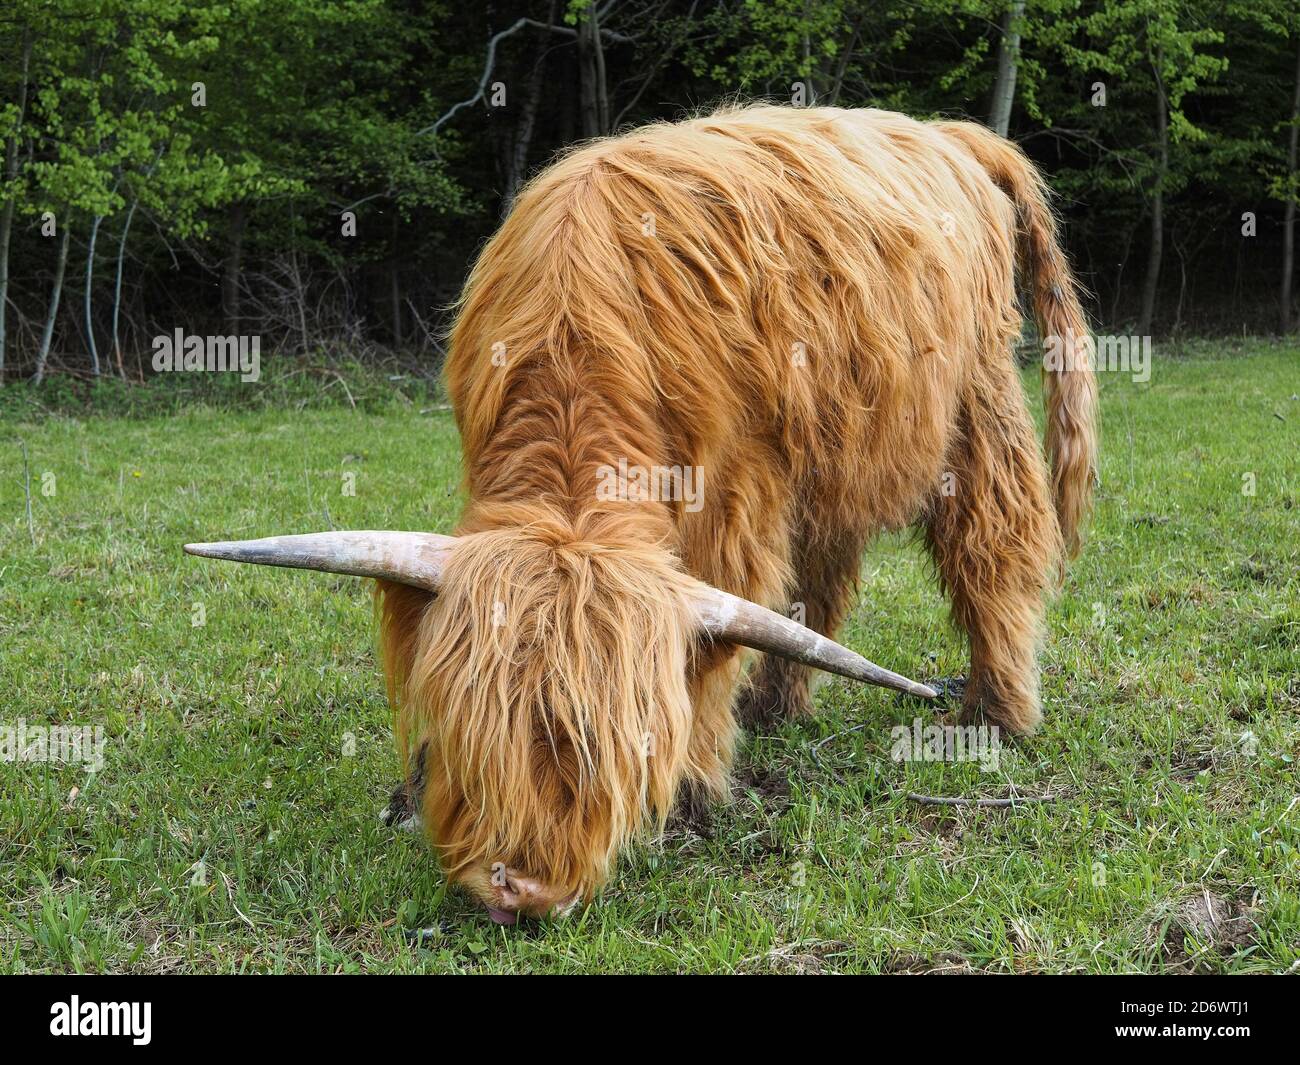 Vache rouge des hautes terres mangeant de l'herbe dans un pré Banque D'Images